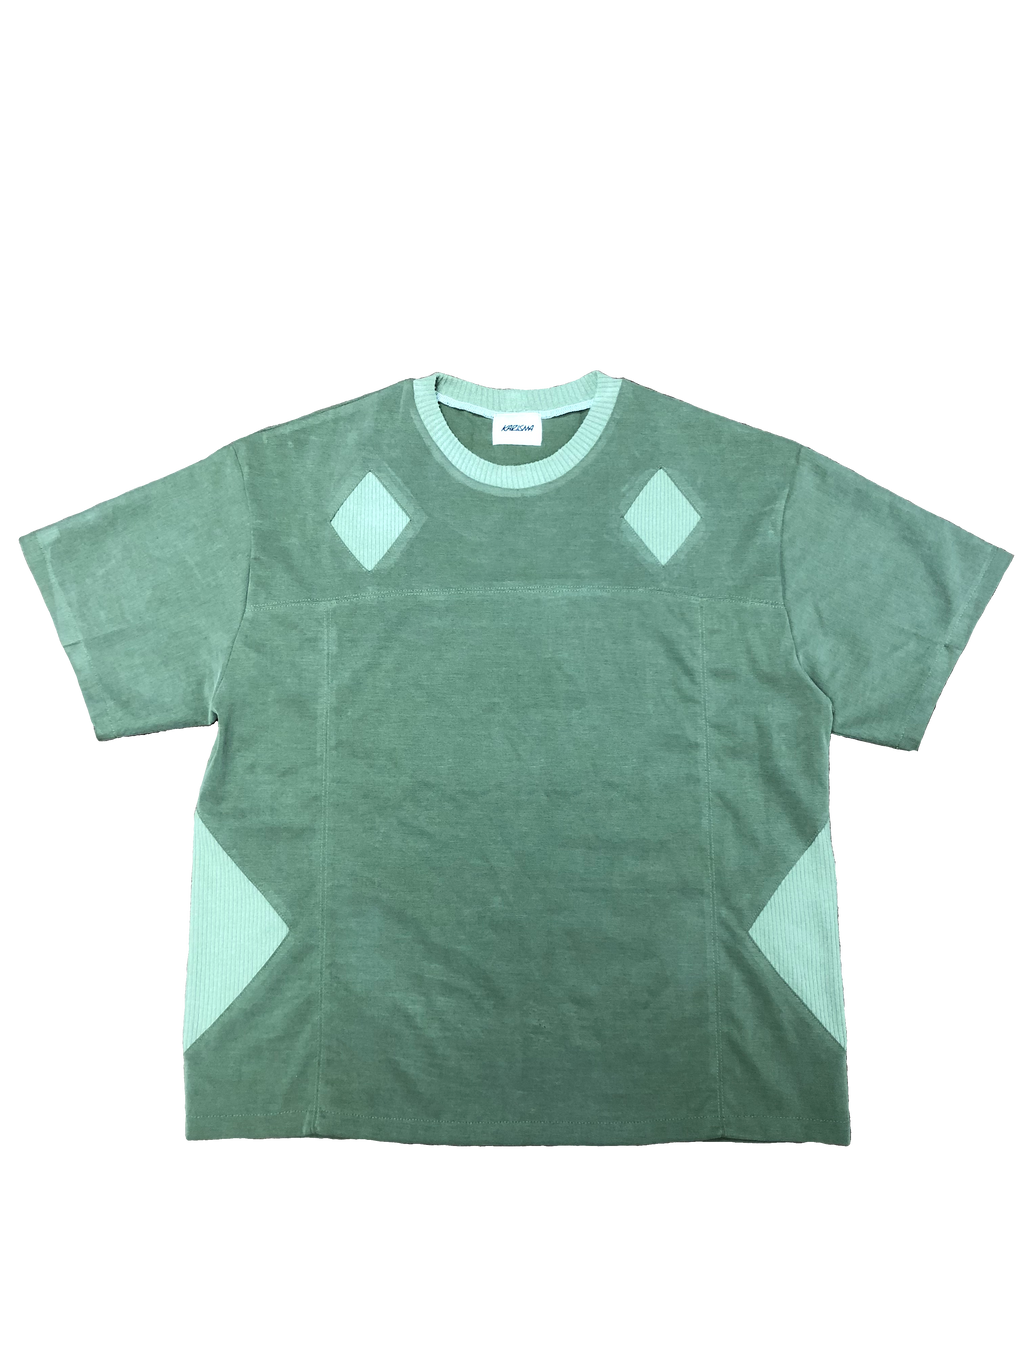 Expert Only T-Shirt (Green)